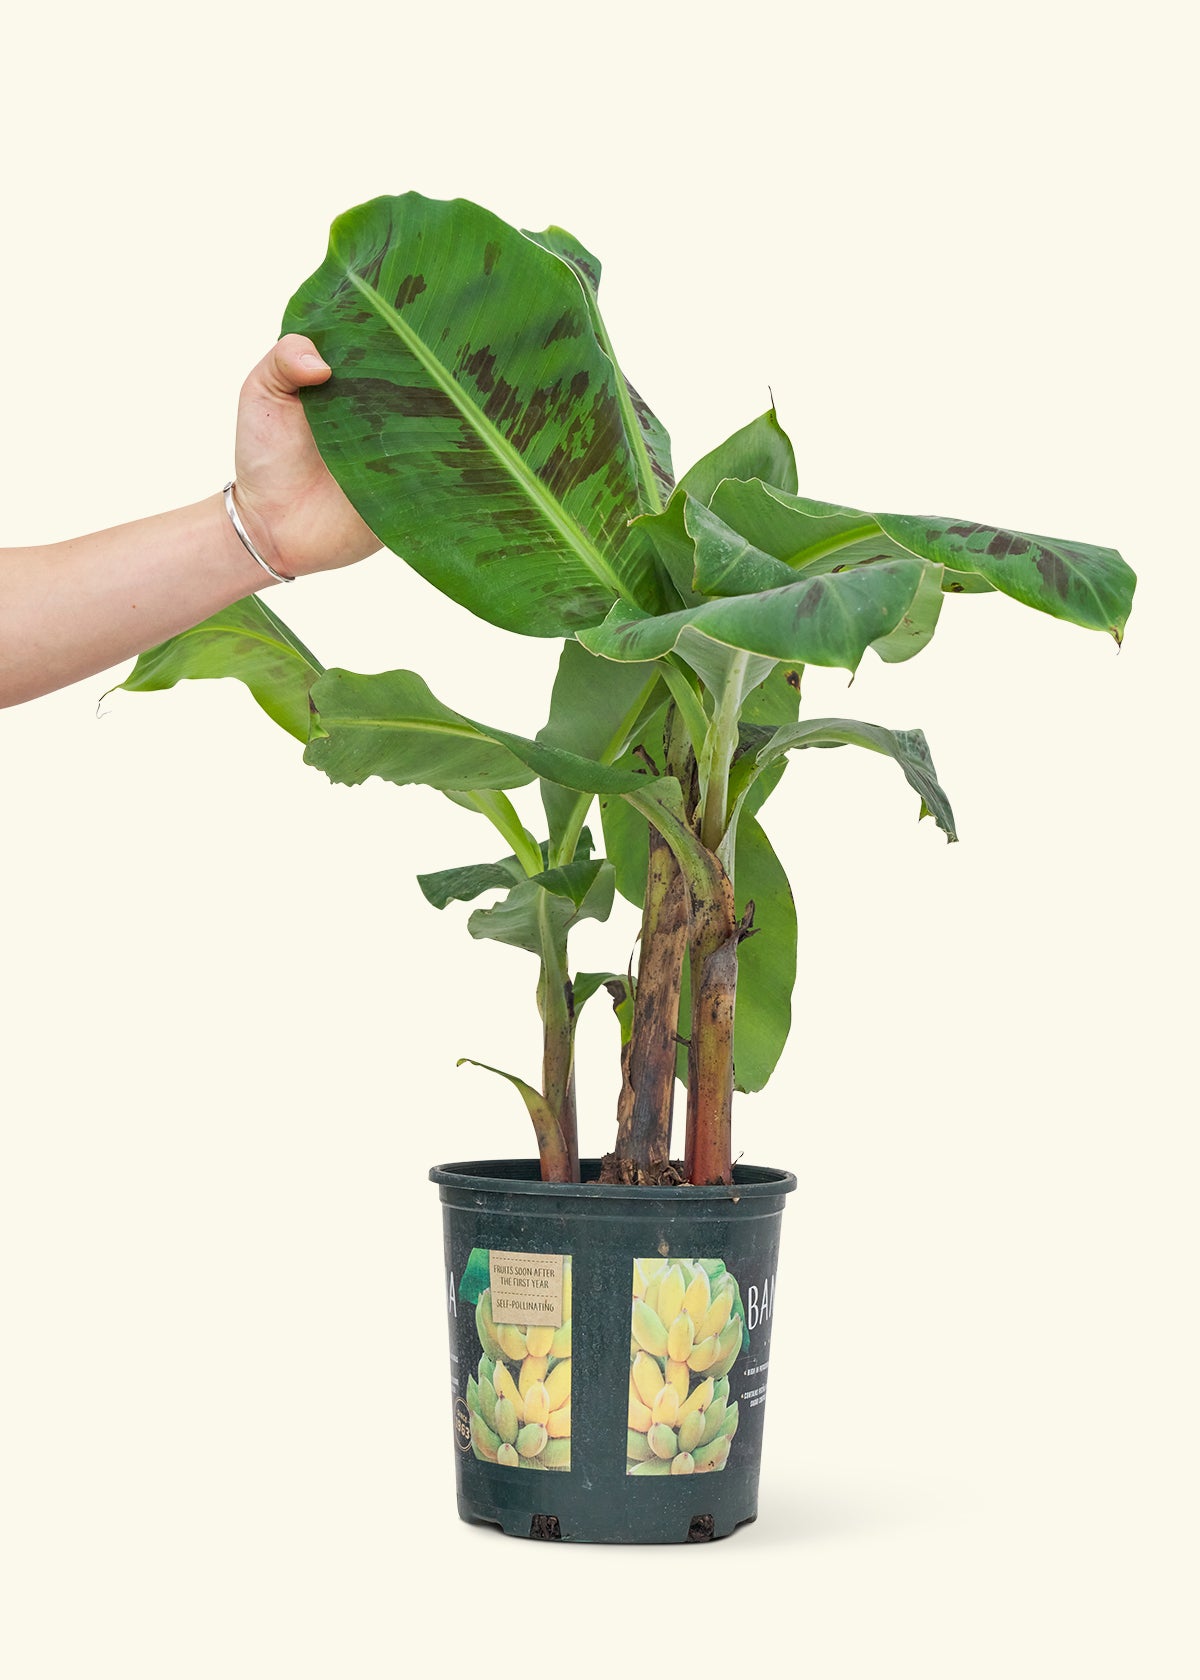 Medium Banana Tree (Musa acuminata) in a grow pot.